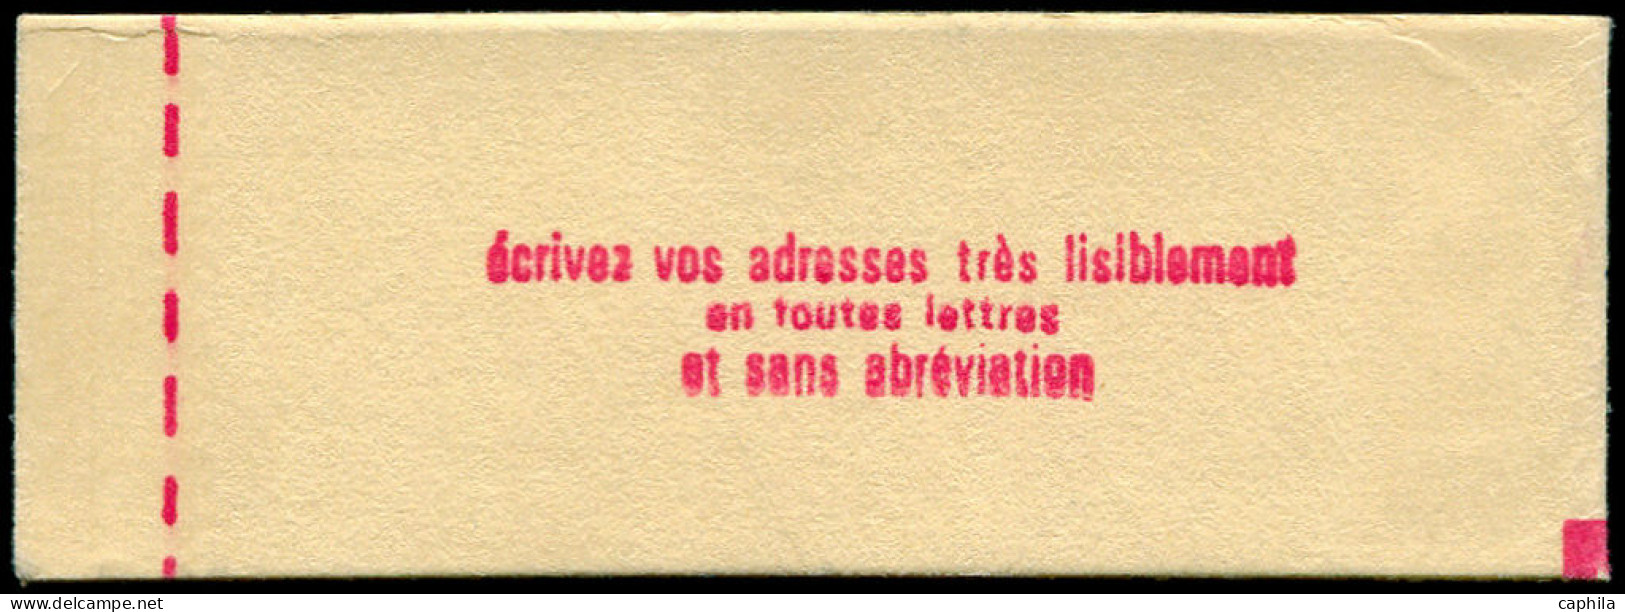 NOUVELLE-CALEDONIE Poste Aérienne ** - 139, Carnet Complet: Concorde - Cote: 370 - Unused Stamps